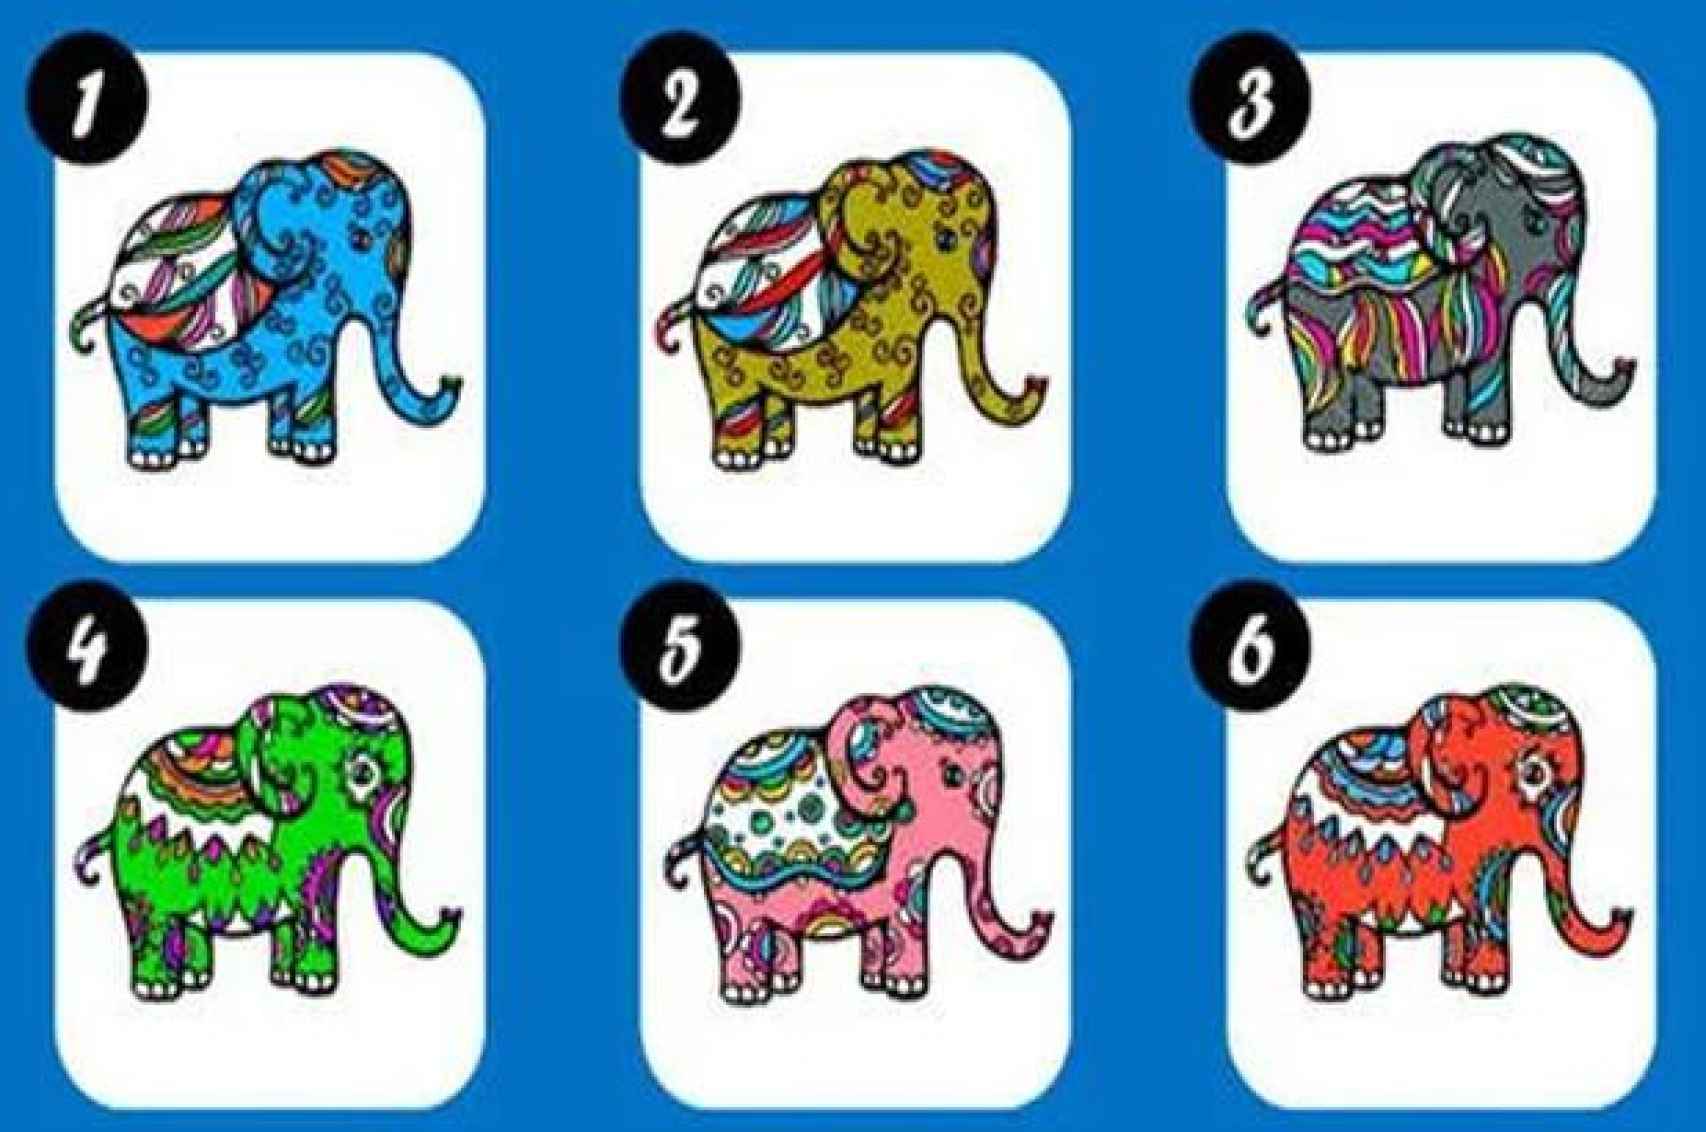 Nuevo test de personalidad: dinos qué elefante te gusta más y te diremos  cómo eres